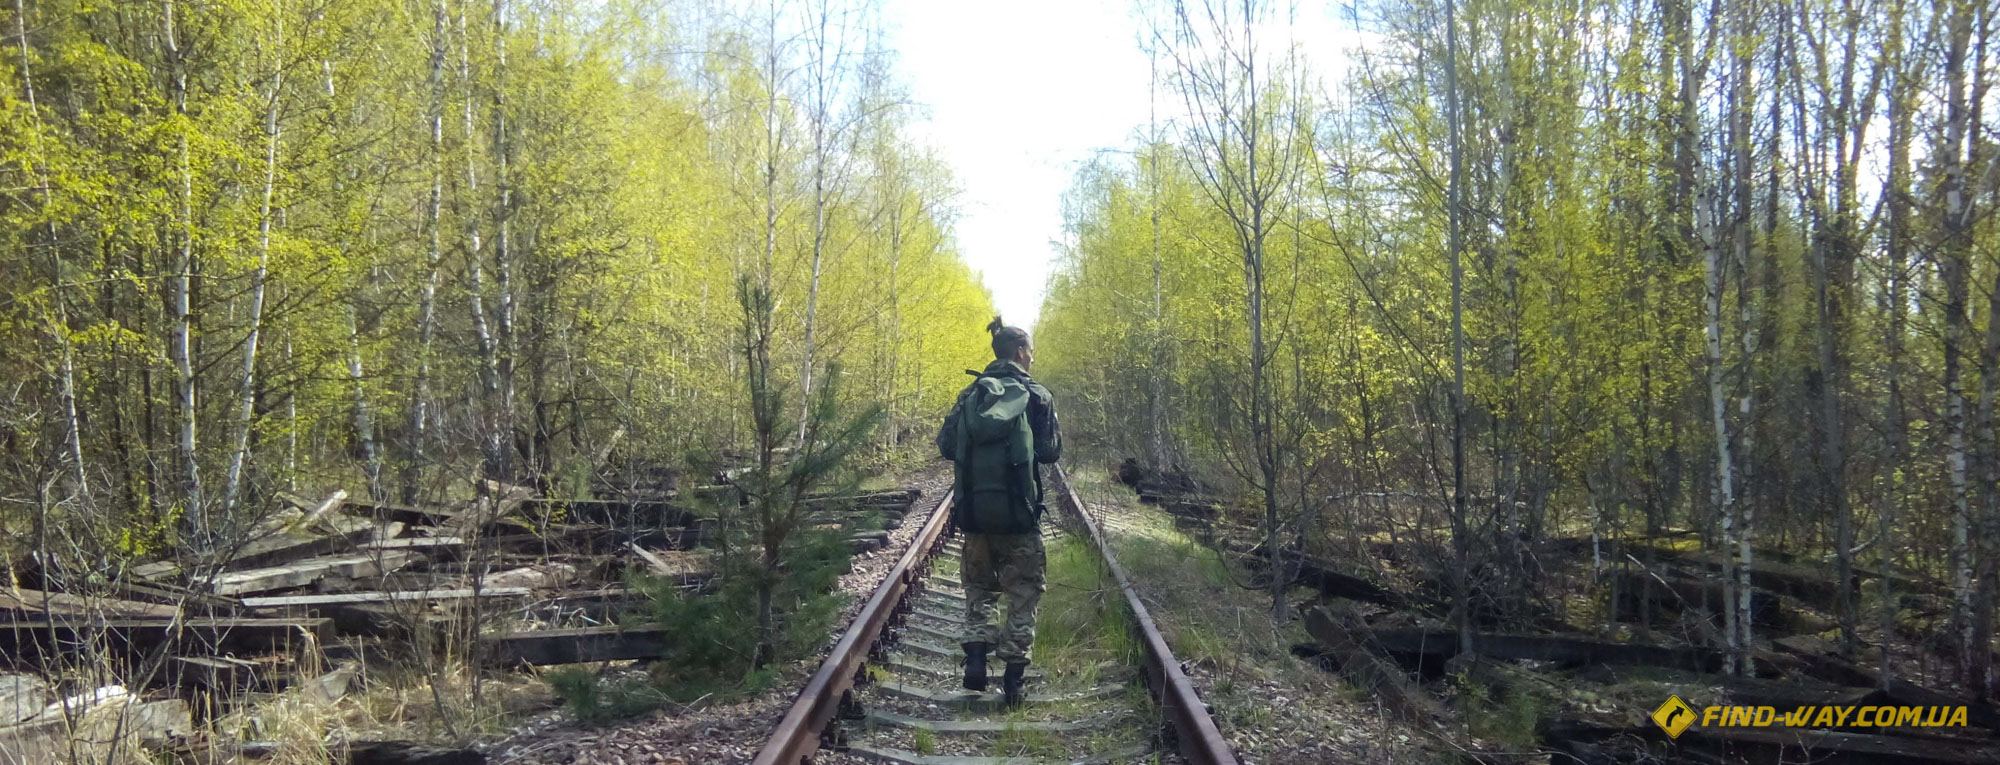 блог чернобыль нелегальный поход сталкеров в зону ЧЗО